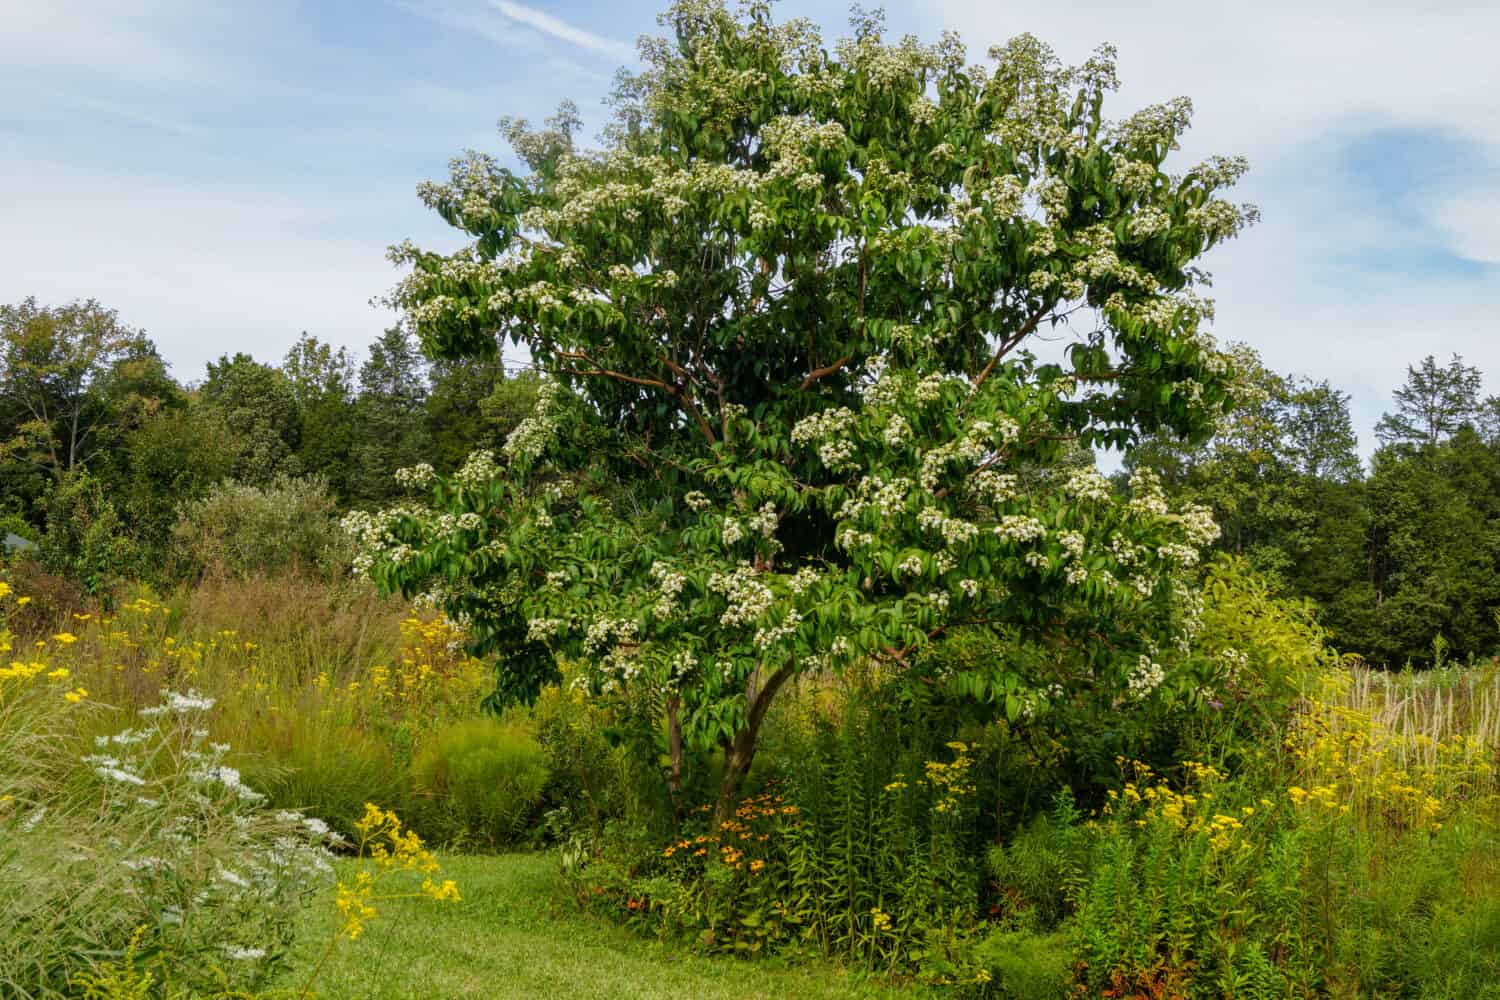 Immagine orizzontale dell'albero deciduo dei sette figli (Heptacodium miconoides) in pieno fiore in un ambiente giardino/paesaggio